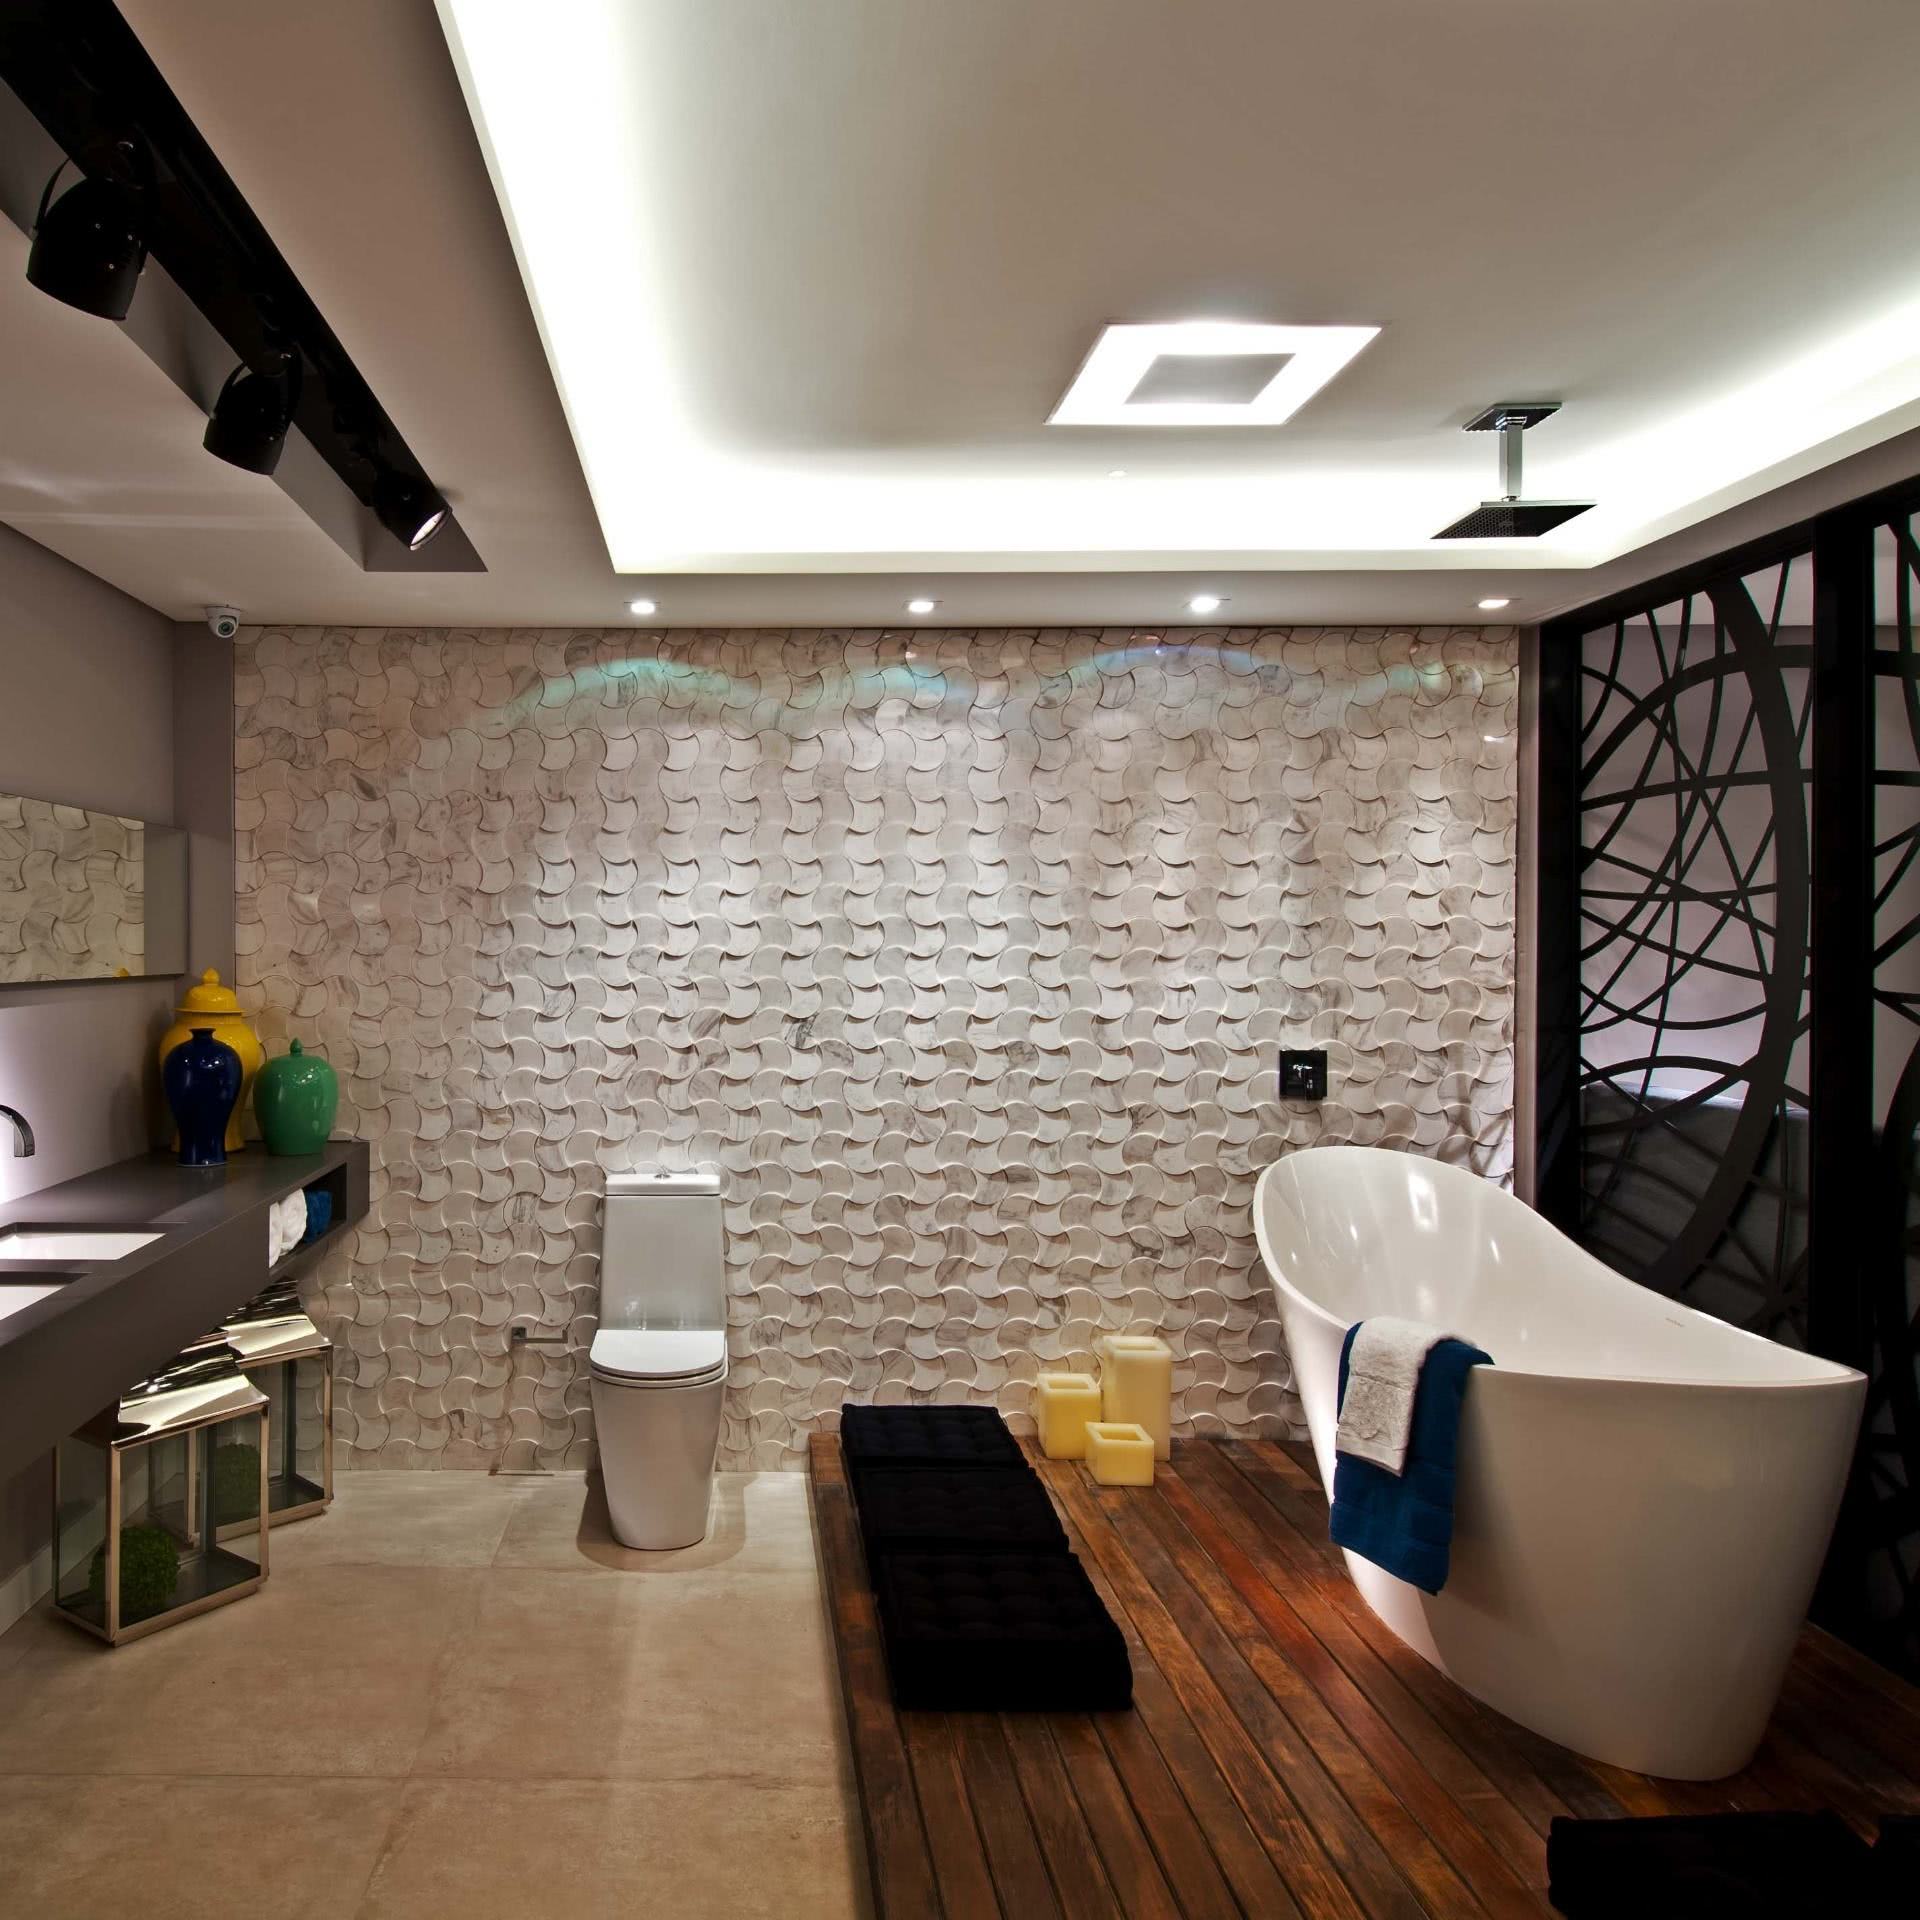 Le sol avec terrasse en bois suit très bien la proposition de salles de bain modernes